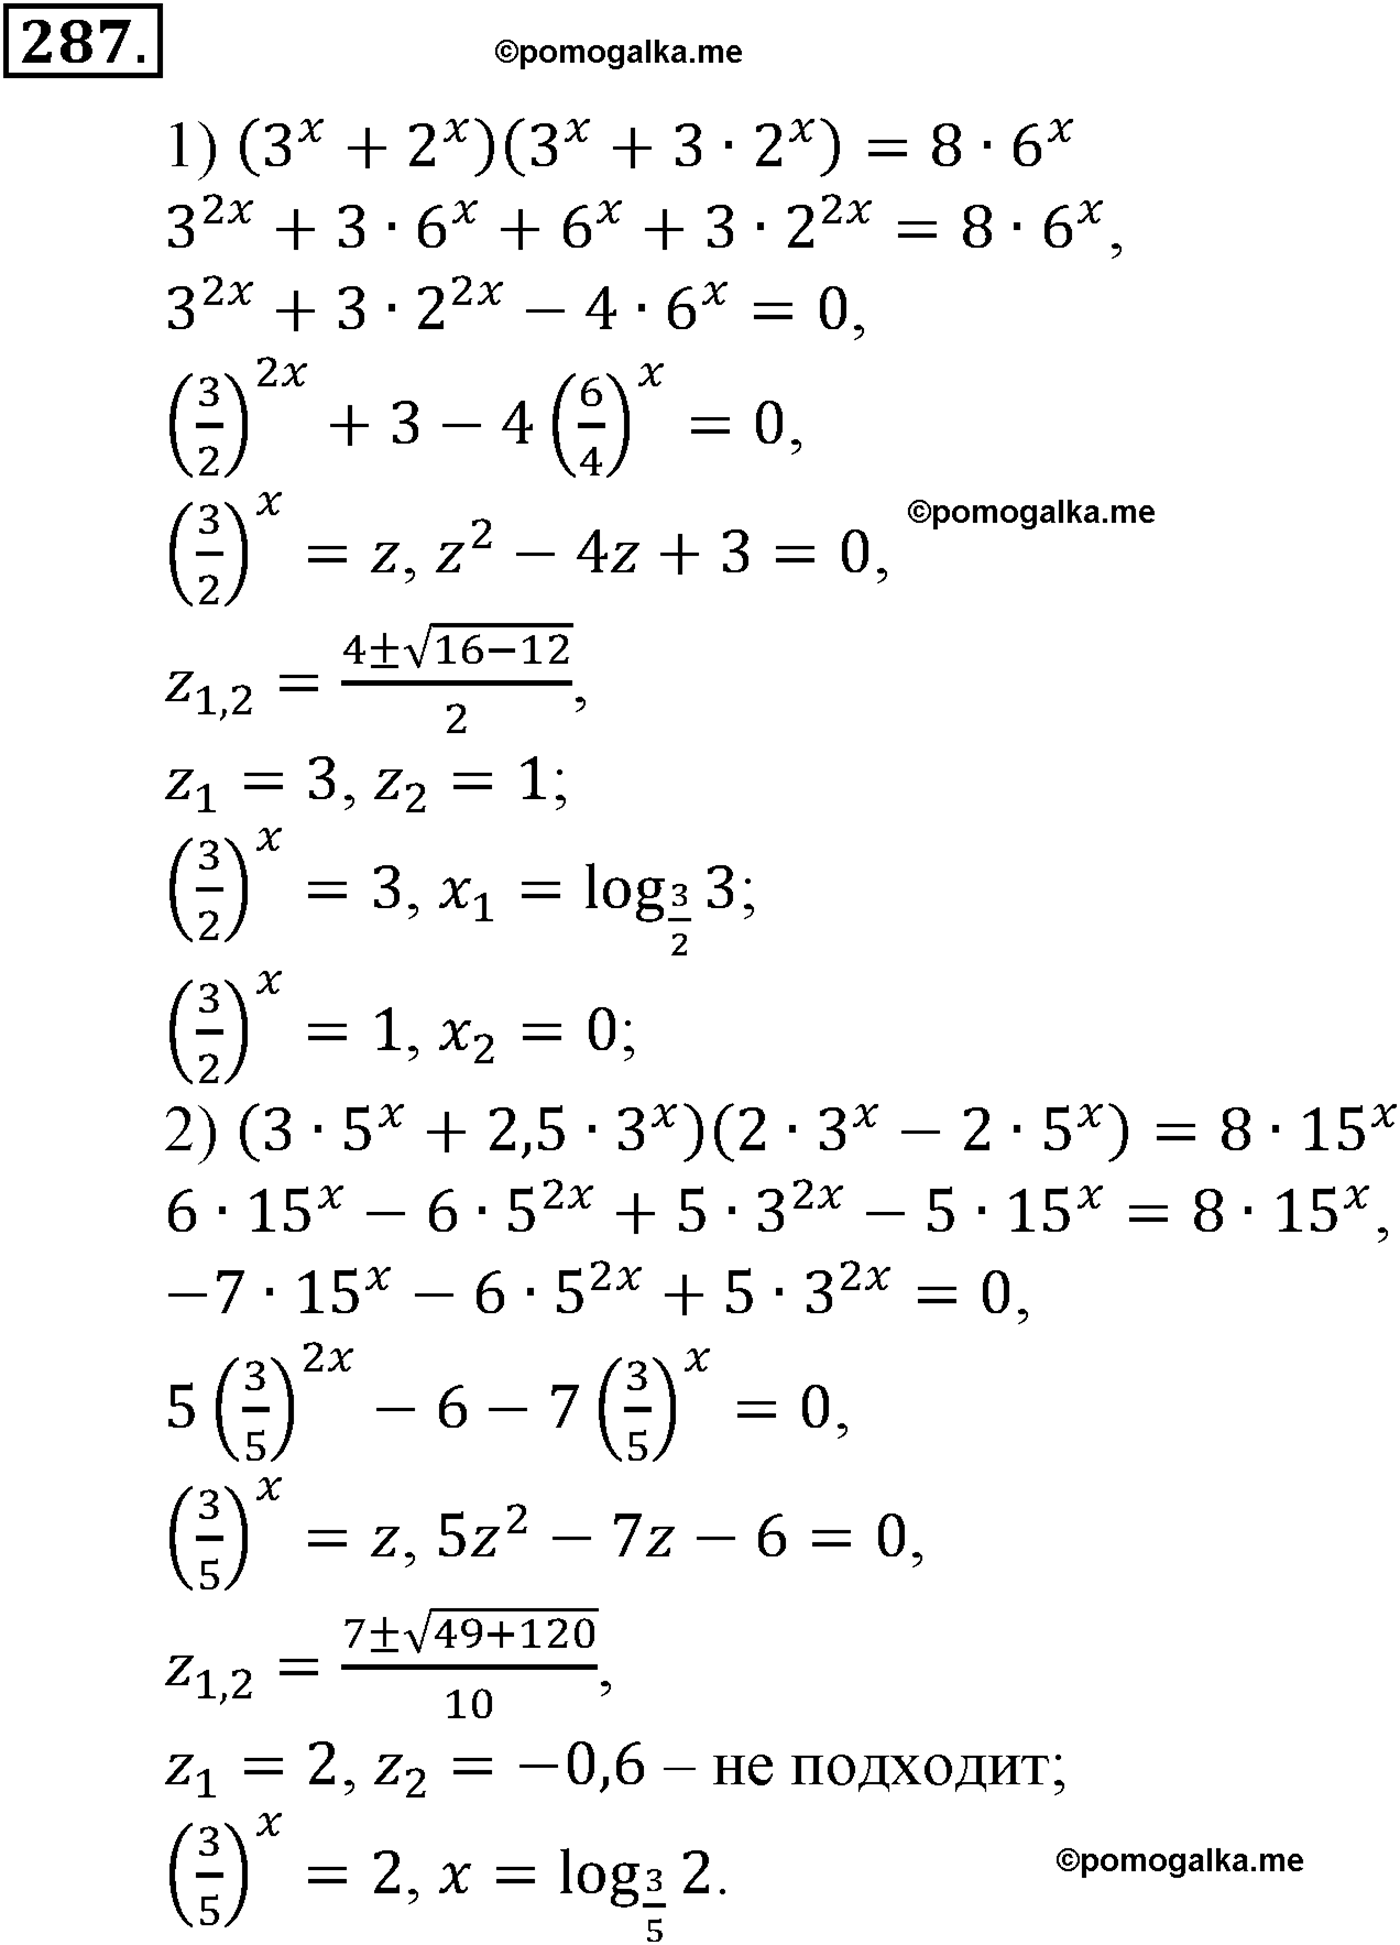 разбор задачи №287 по алгебре за 10-11 класс из учебника Алимова, Колягина